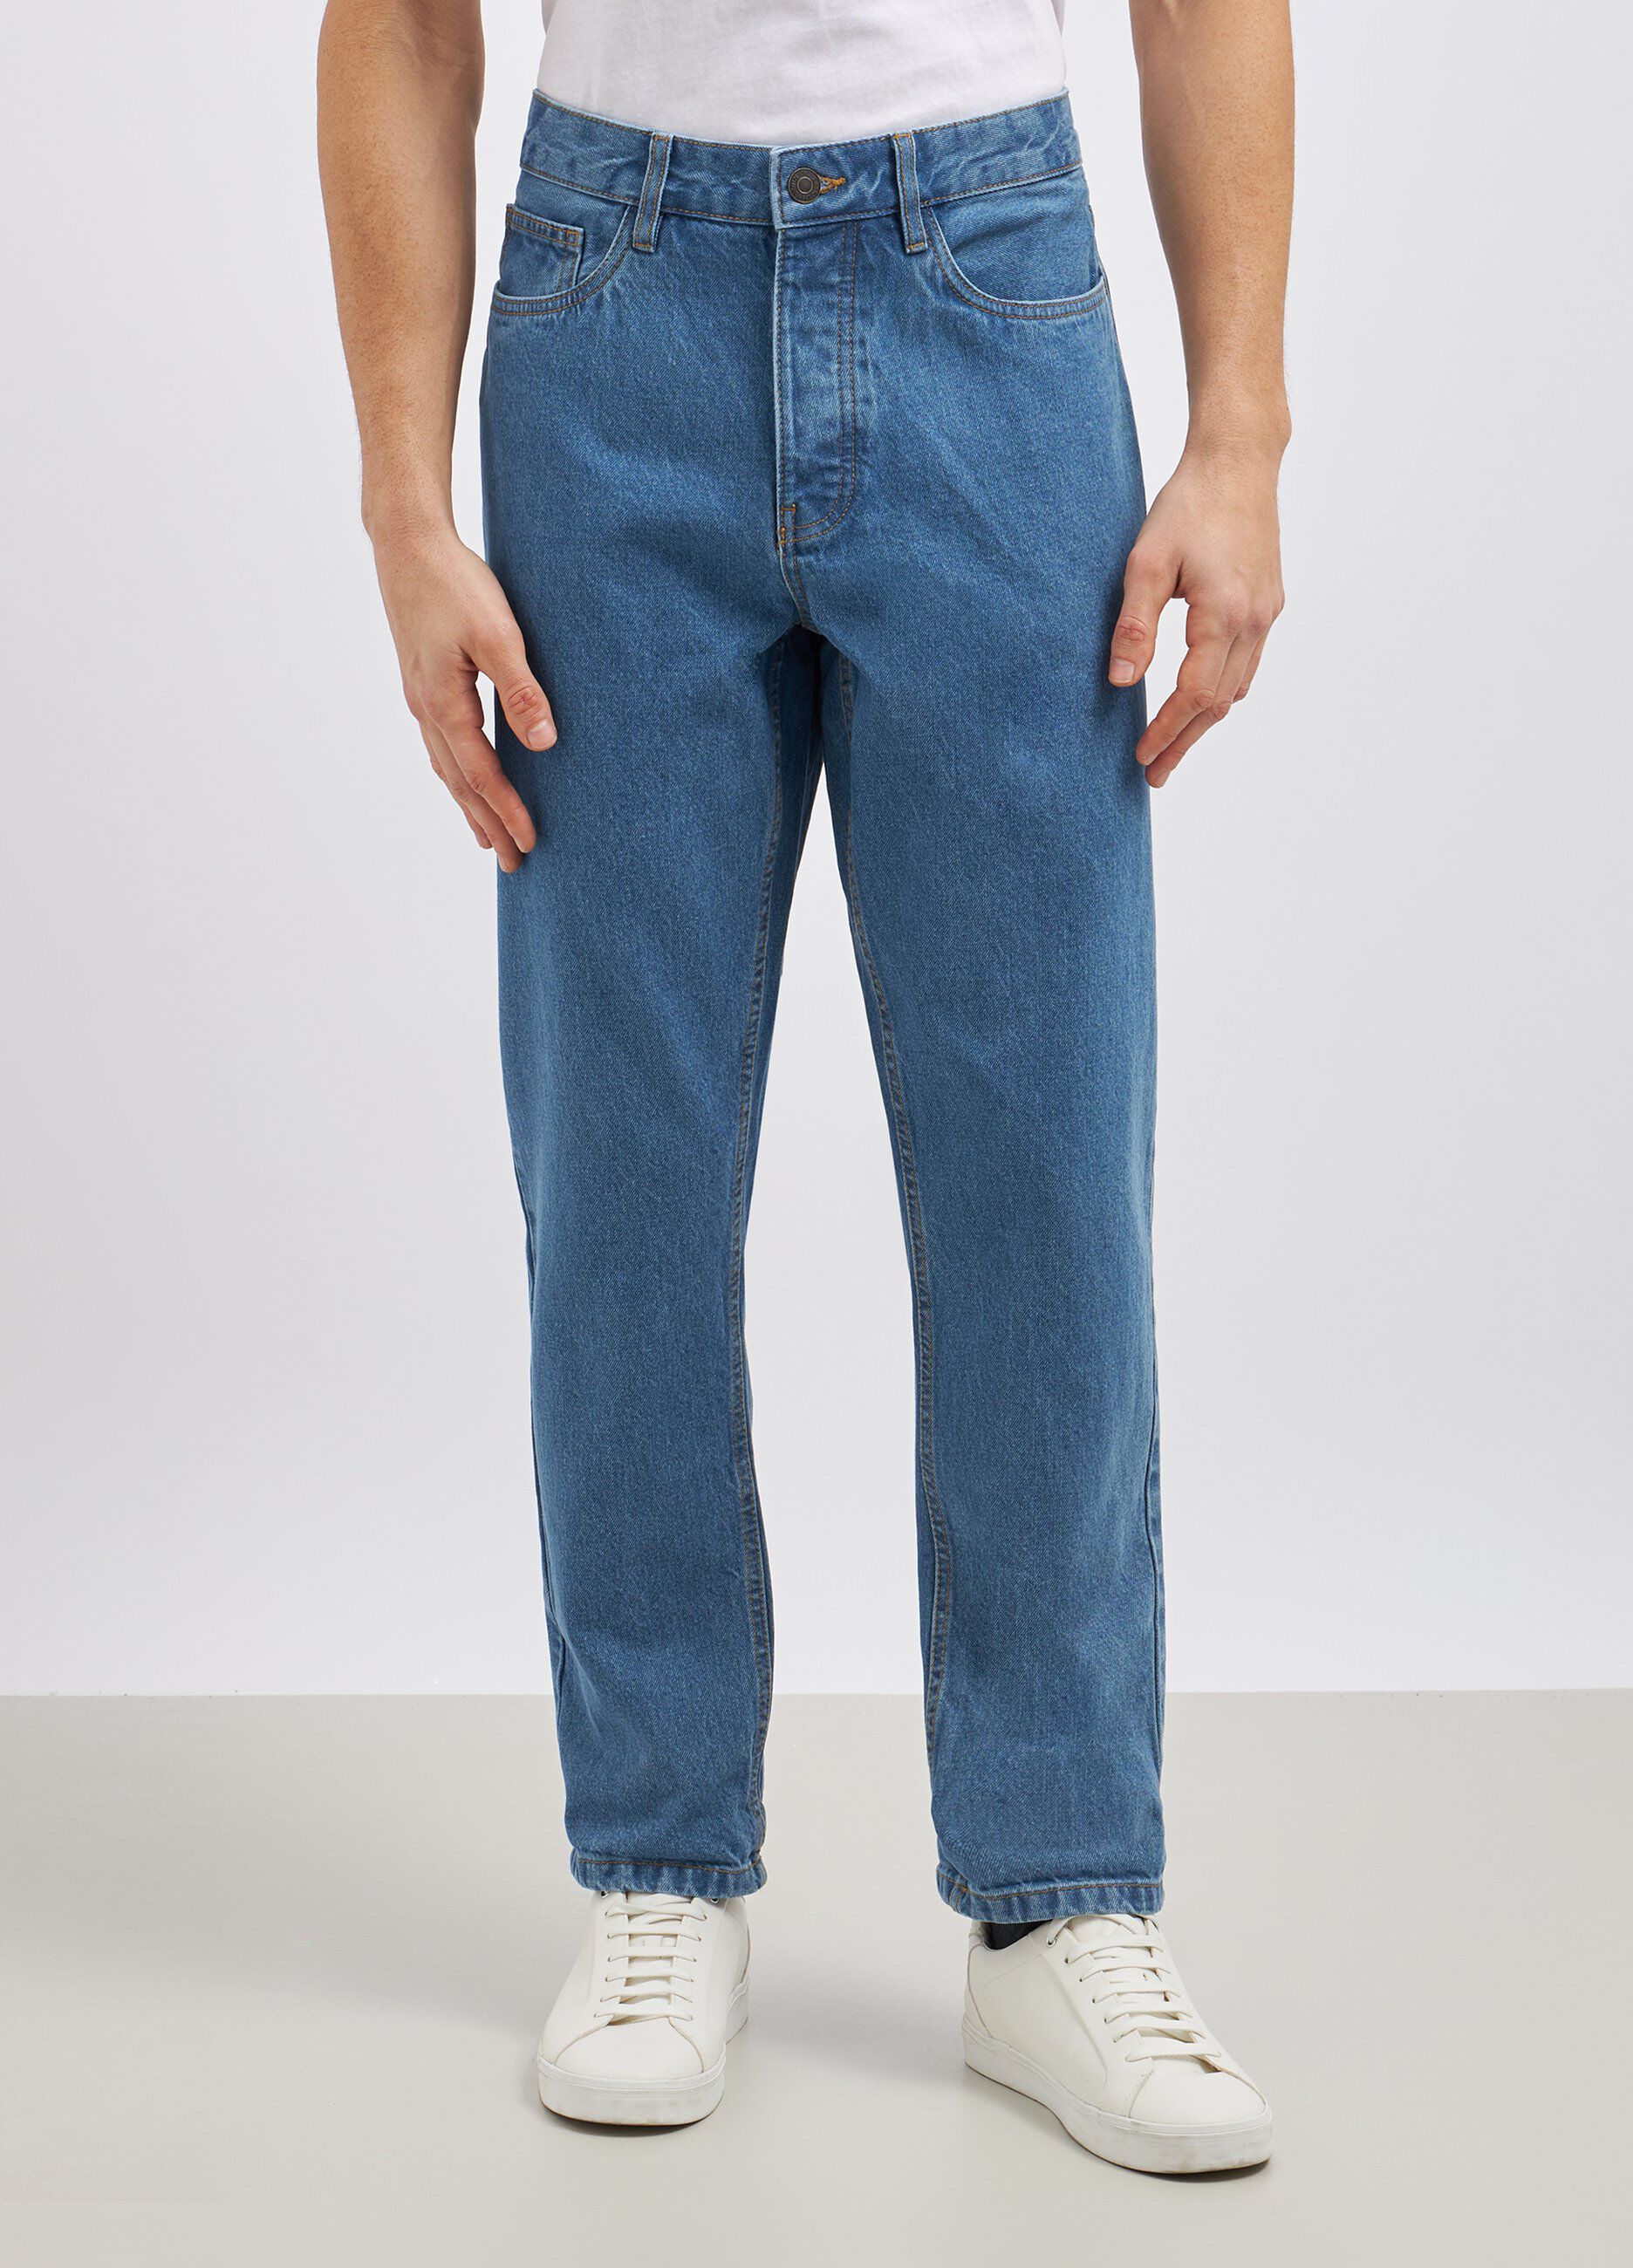 Jeans straight in puro cotone uomo_1